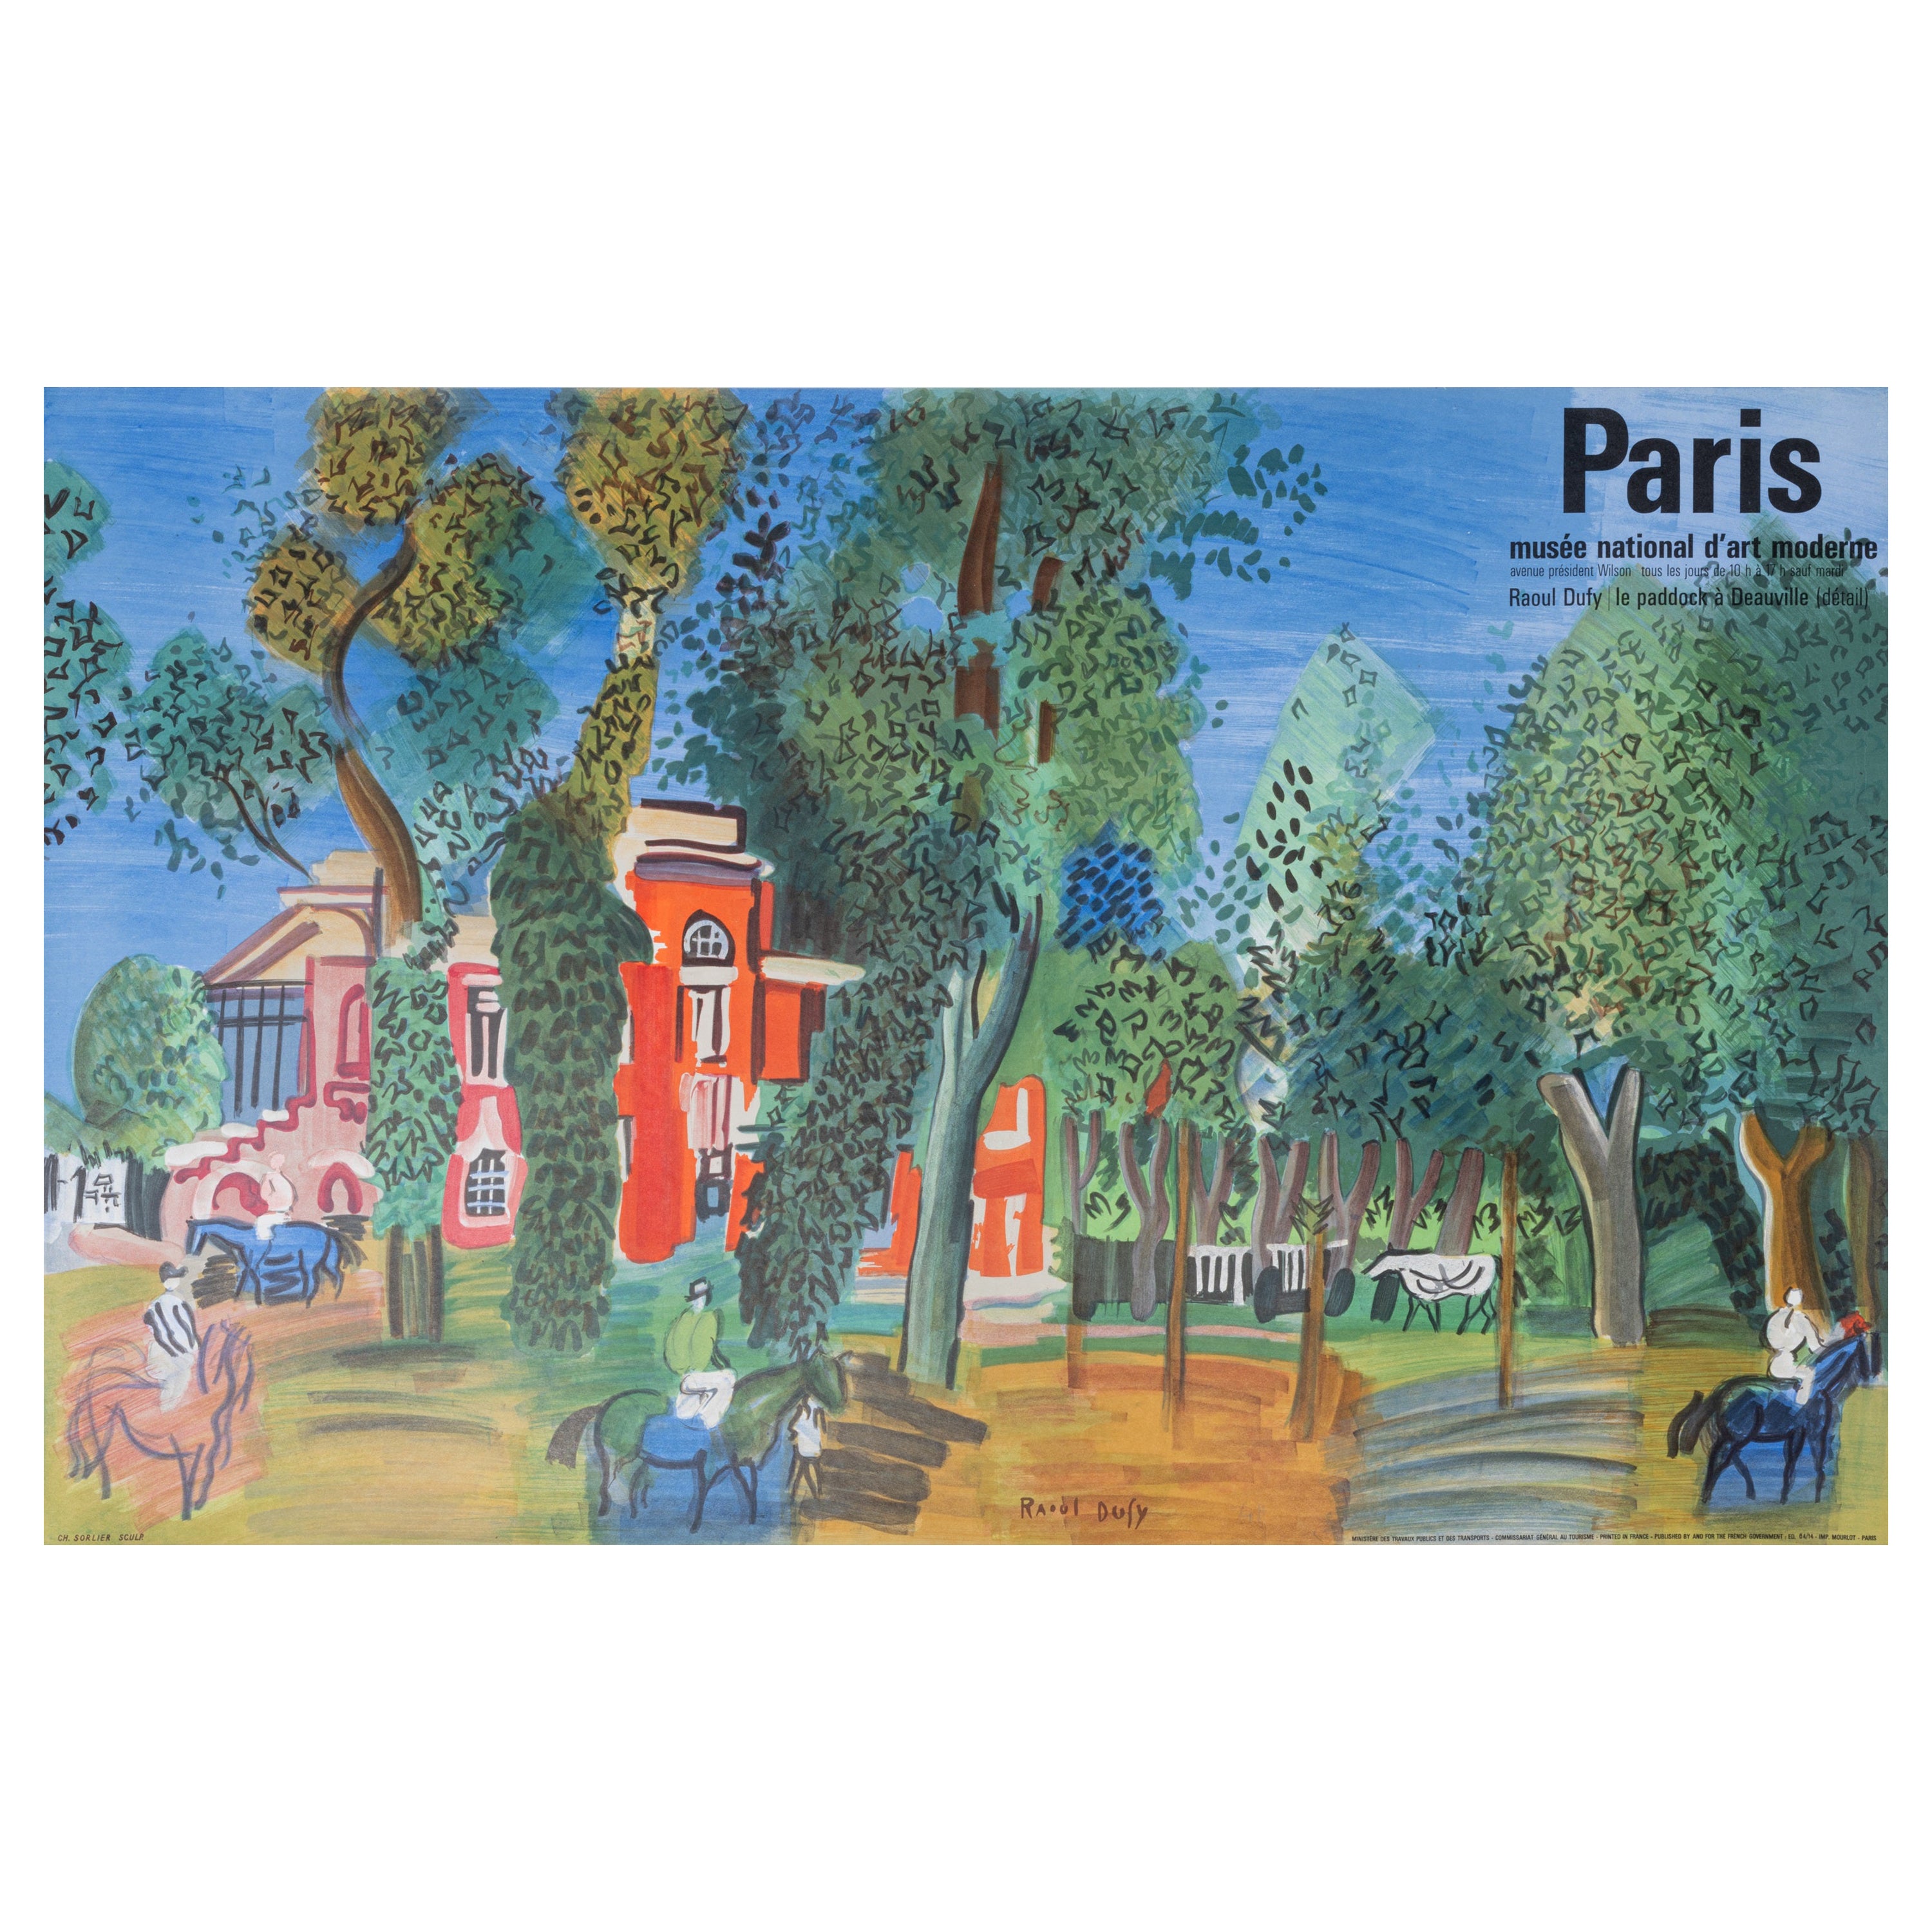 Dufy, Original Vintage Poster, Paris, MAD, Fauvism Cubism, Deauville Horses 1964